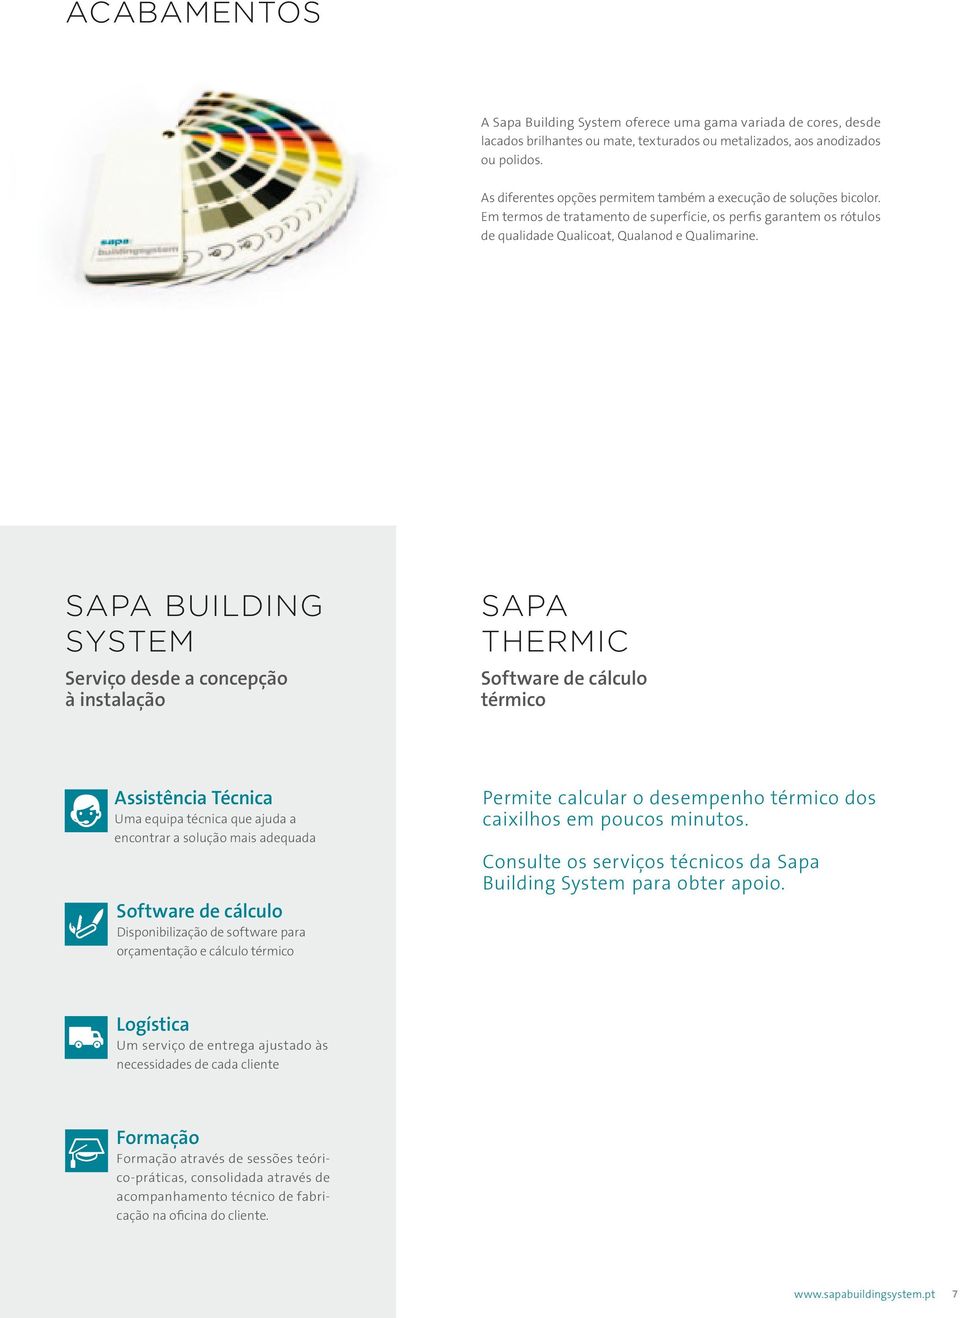 SAPA BUILDING SYSTEM SAPA THERMIC Serviço desde a concepção à instalação Software de cálculo térmico Assistência Técnica Uma equipa técnica que ajuda a encontrar a solução mais adequada Permite